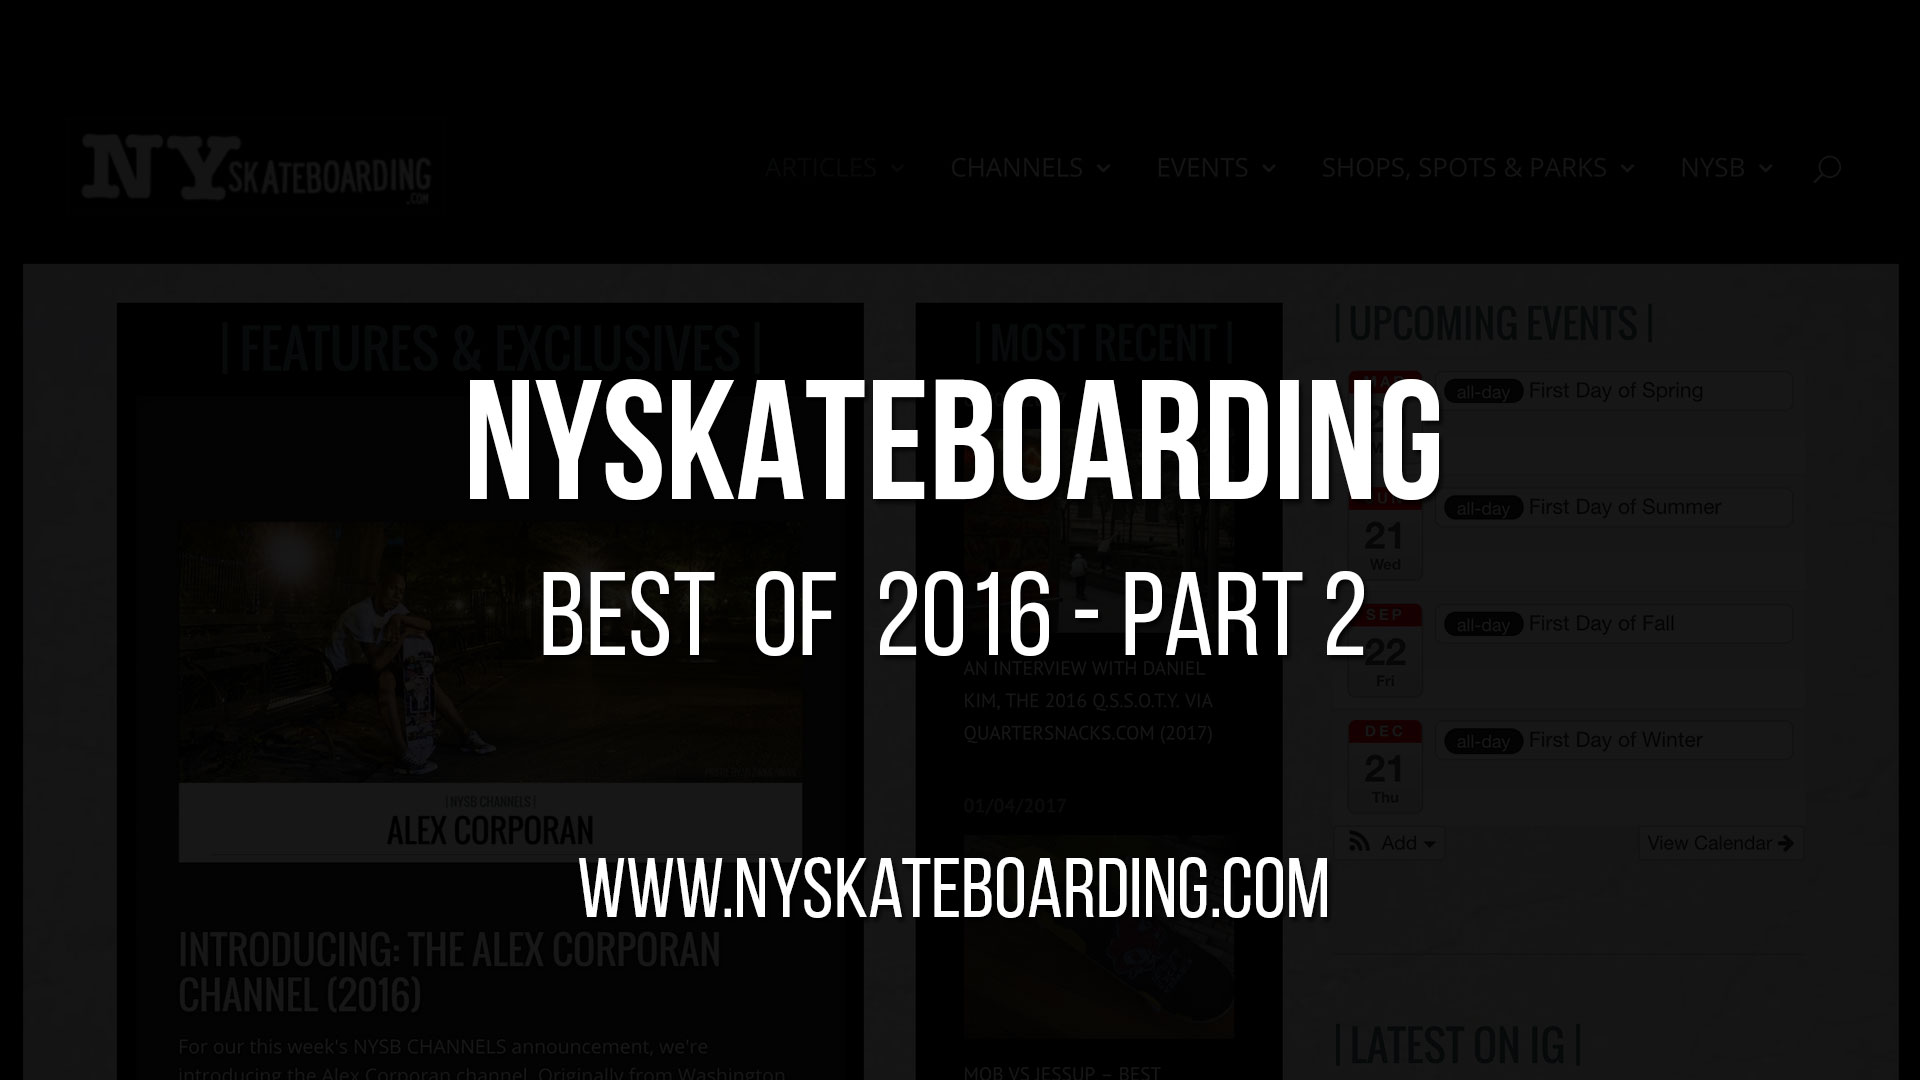 NYSkateboarding’s Best of 2016 – Part 2